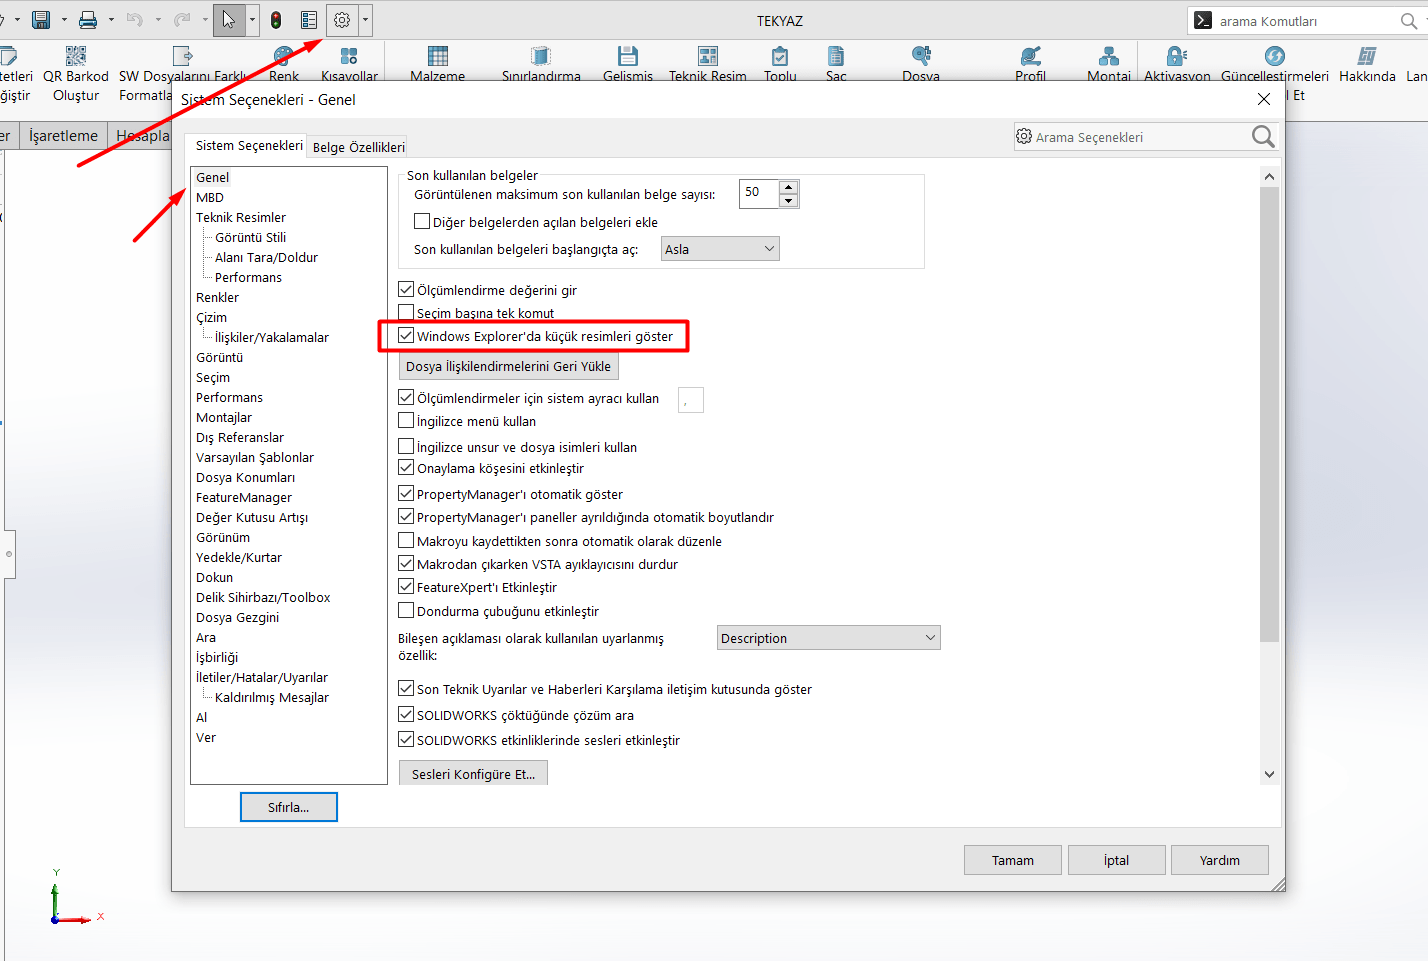 SOLIDWORKS Sistem Seçenekleri Windows Explorer Küçük Resimler